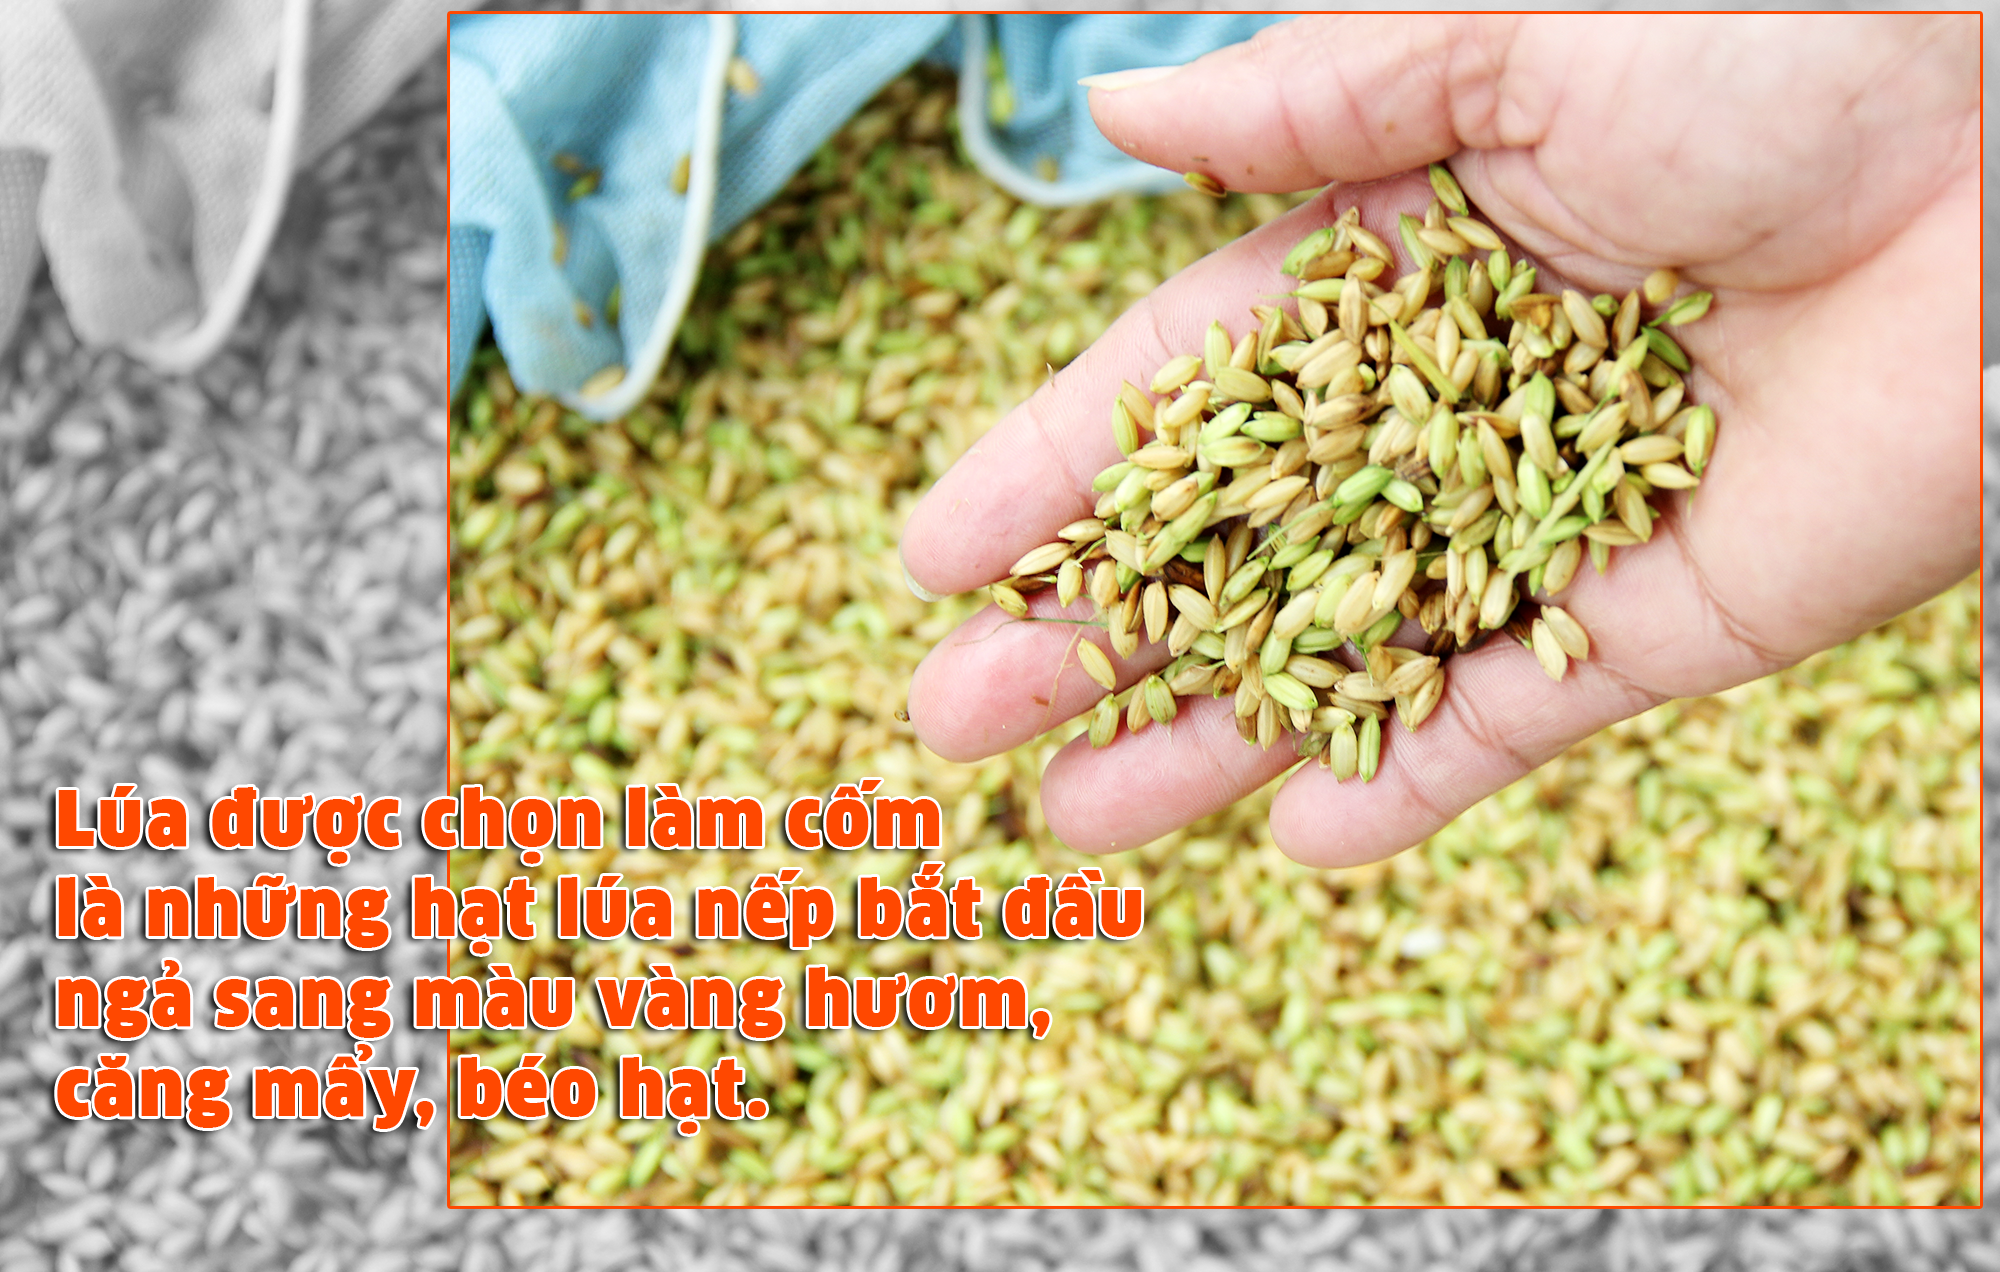 lúa được chọn làm cốm là những hạt lúa nếp bắt đầu ngả sang màu vàng hươm, căng mẩy, béo hạt. Ảnh Mỹ Nga 